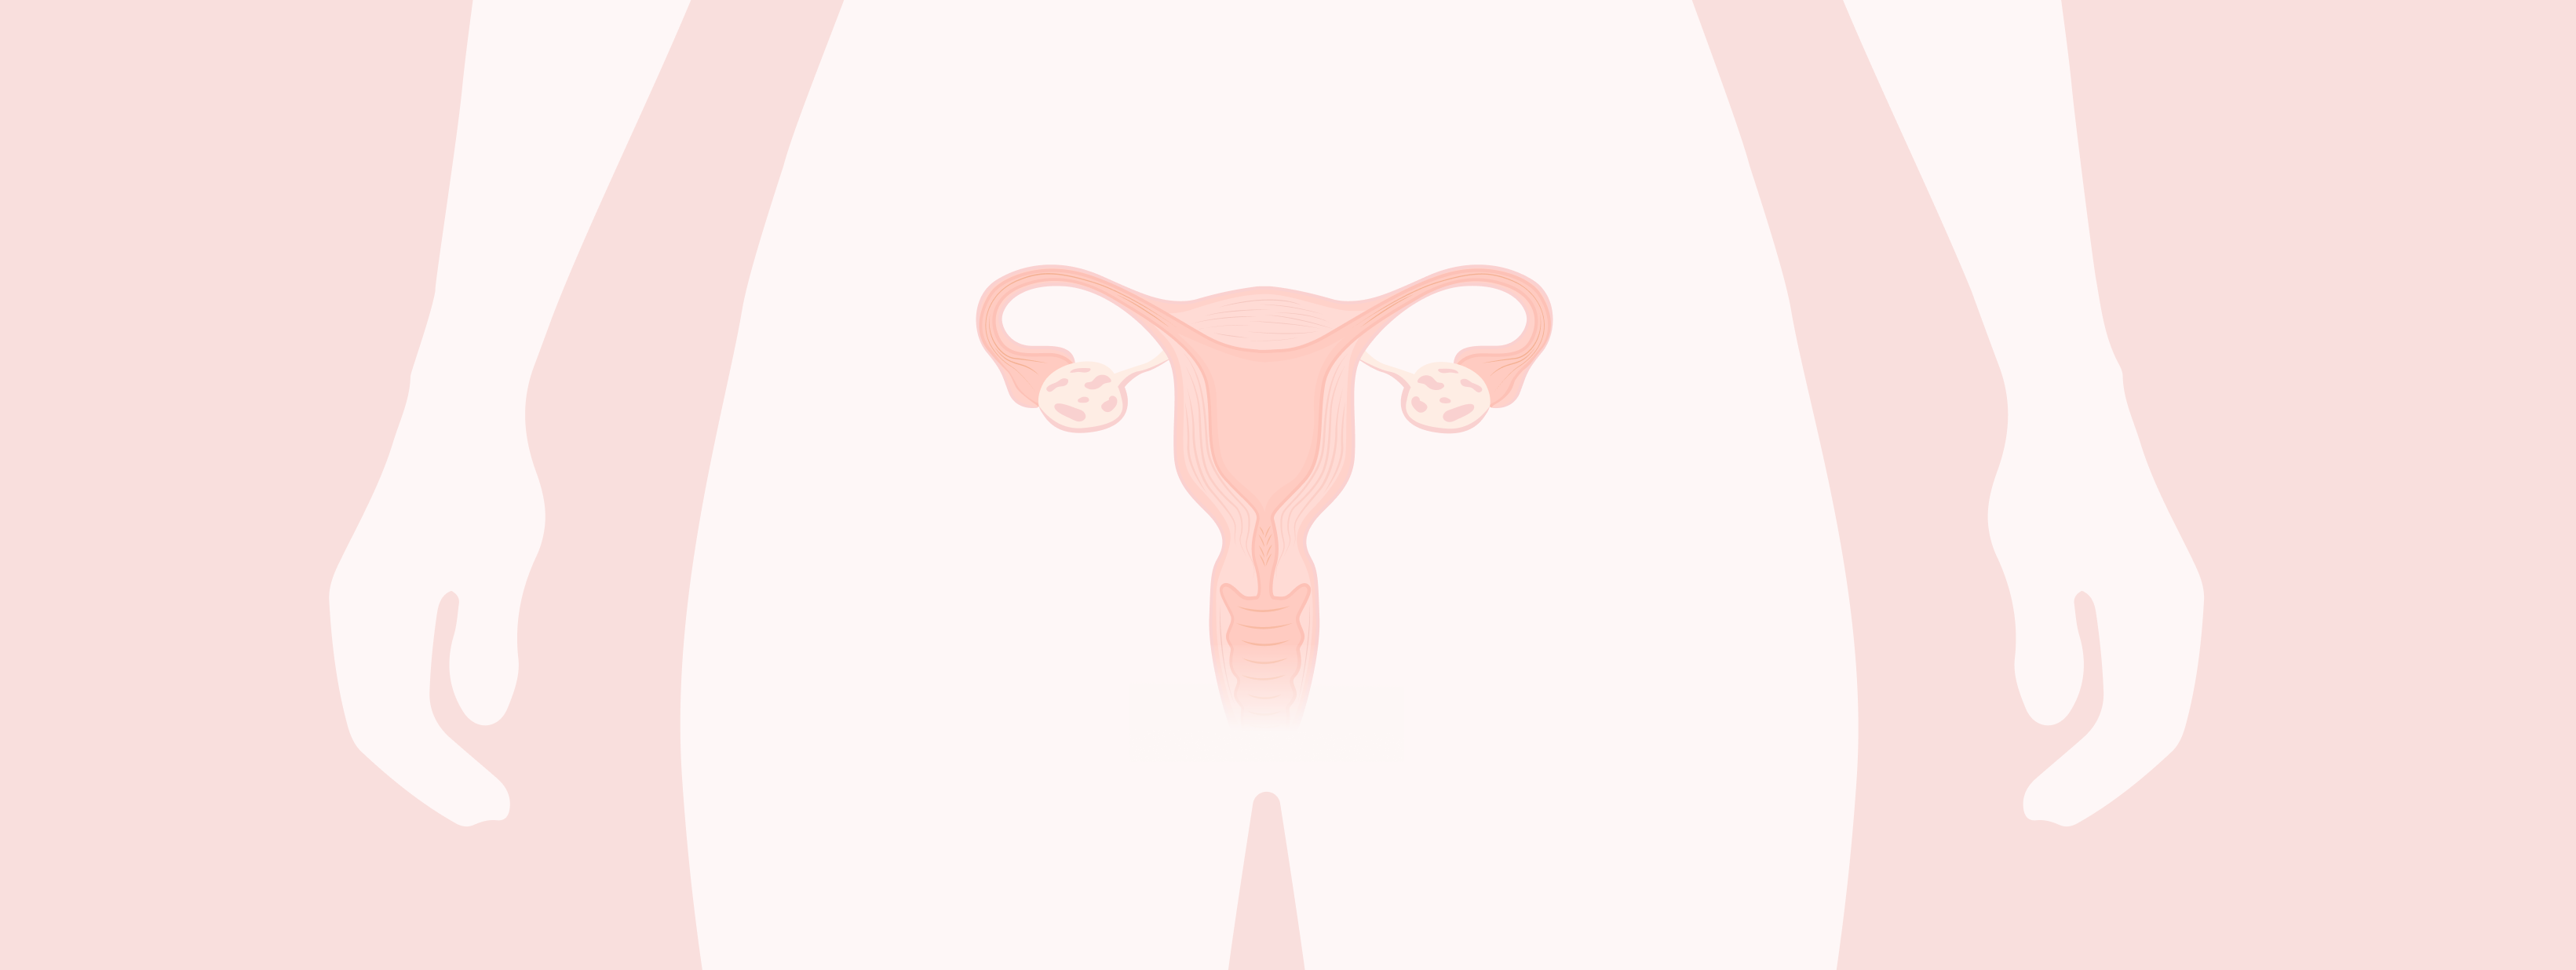 Illustration de l'utérus